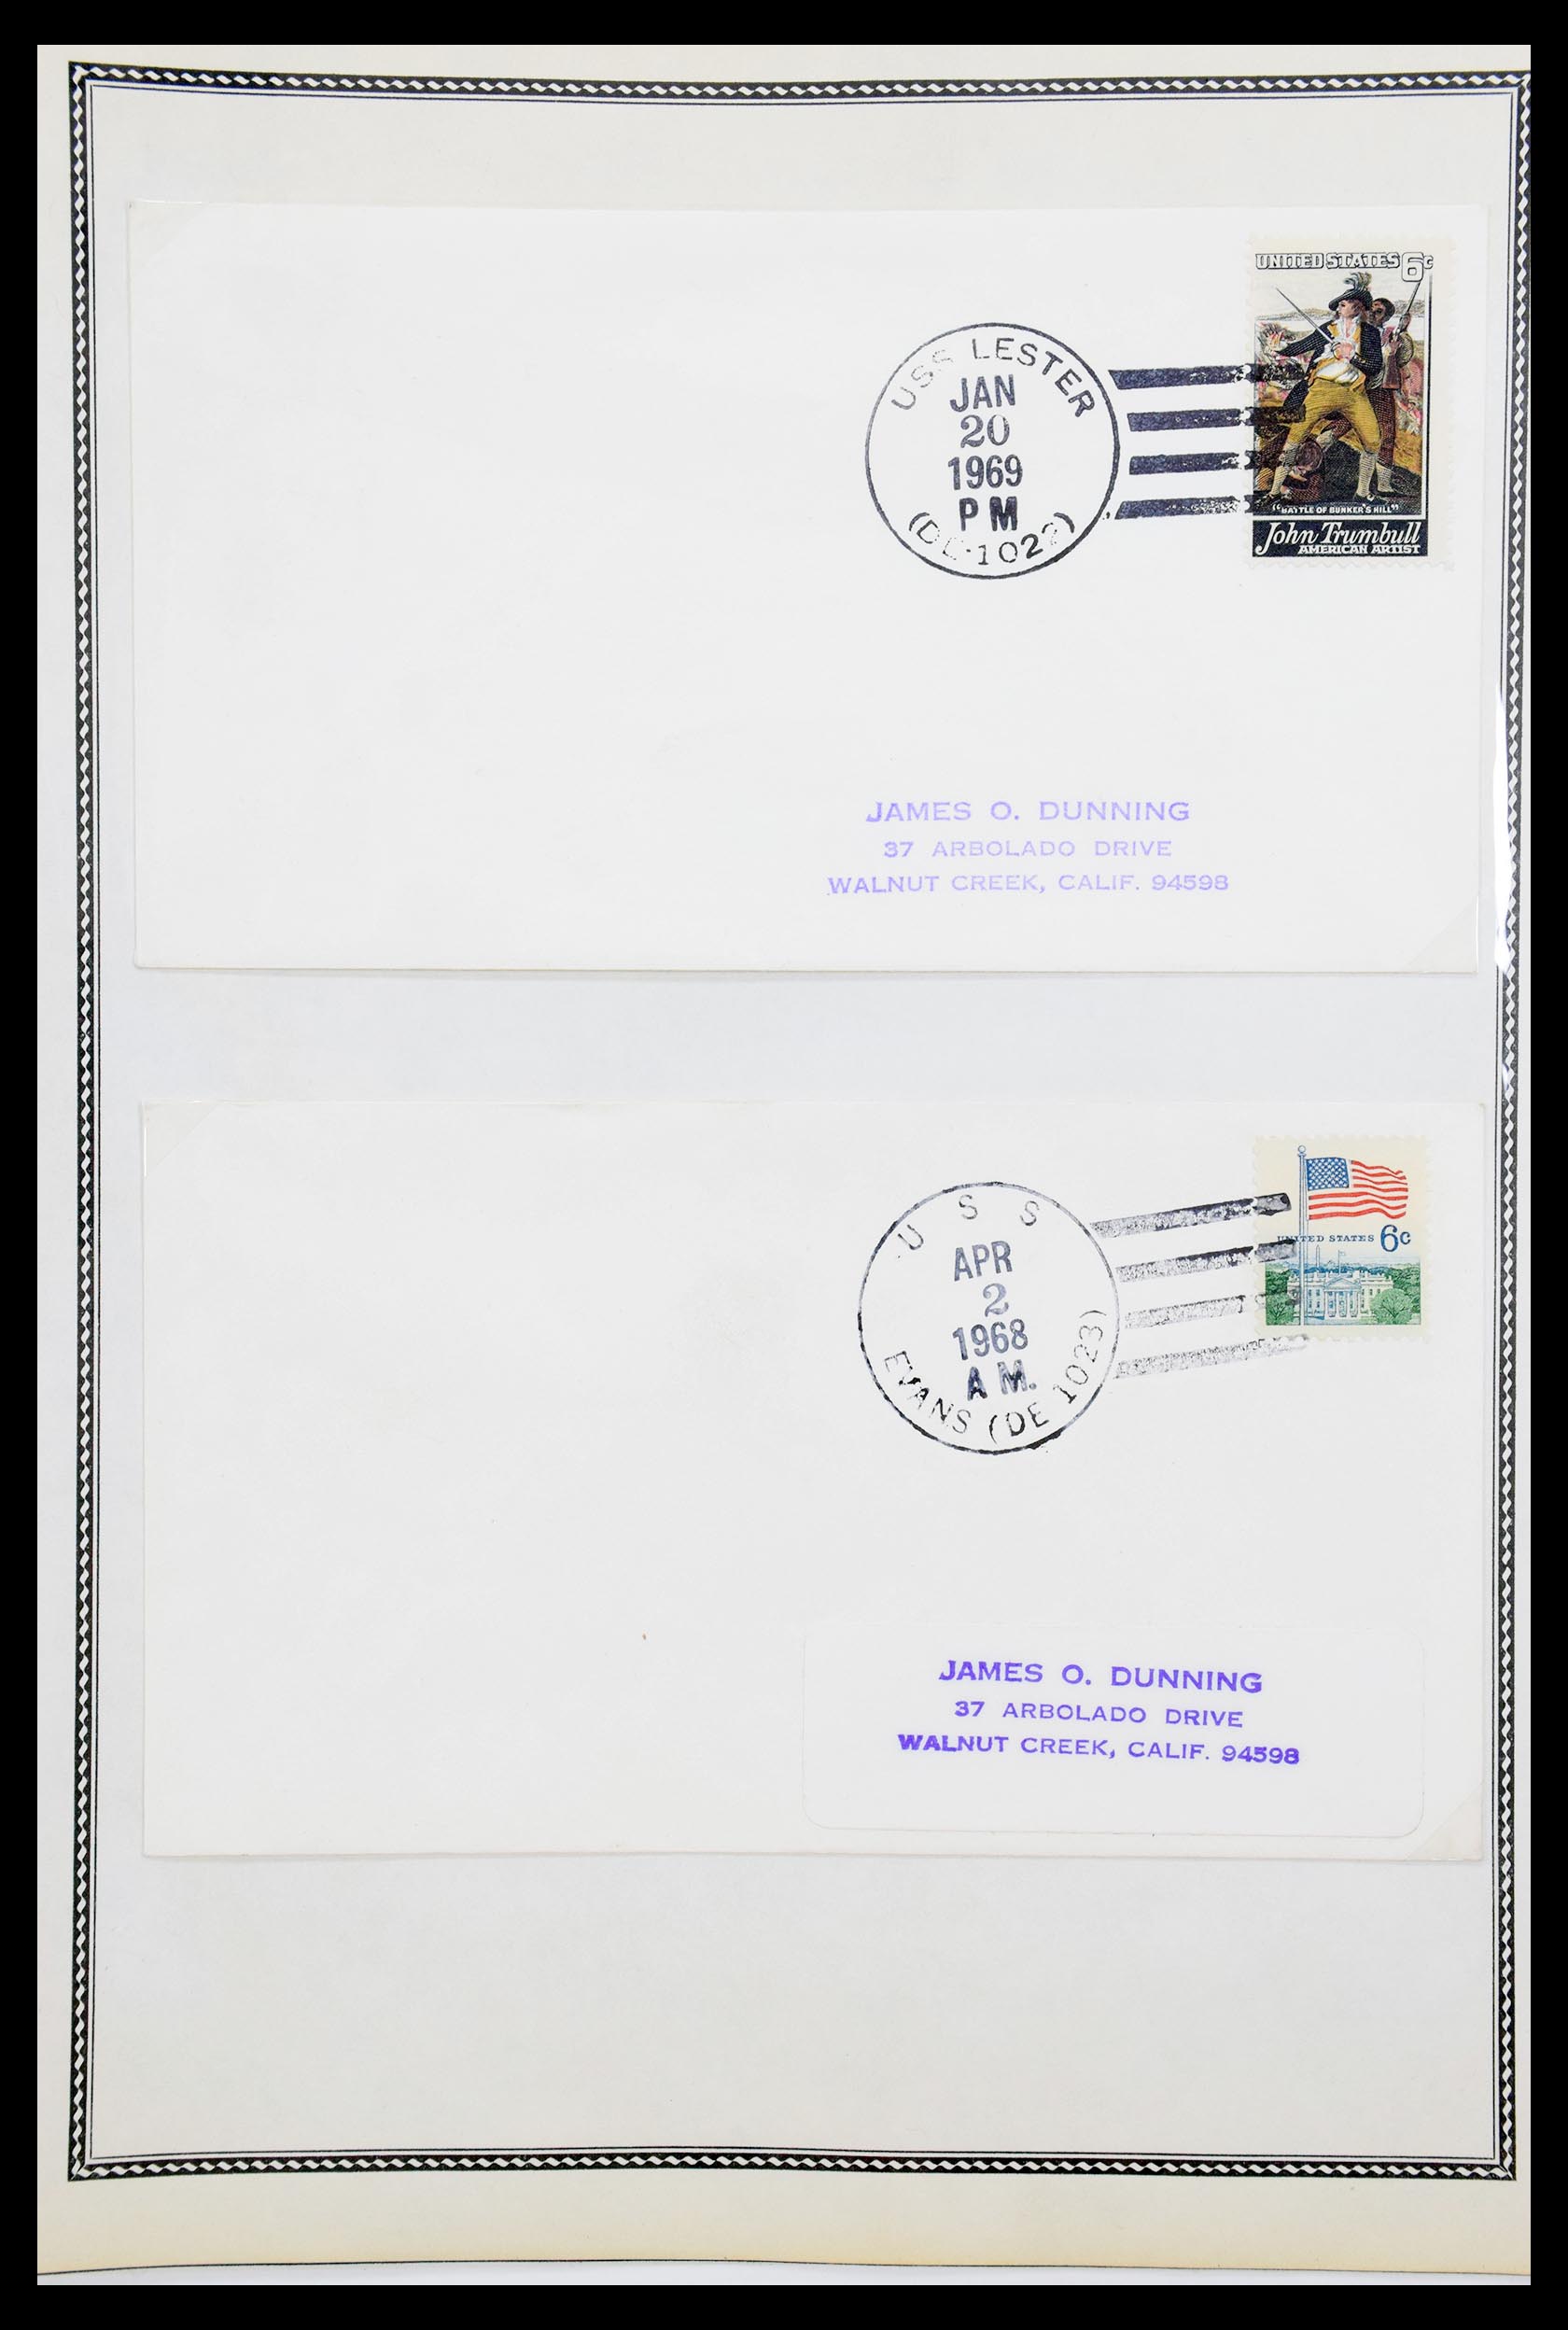 30341 072 - 30341 USA scheepspost brieven 1930-1970.